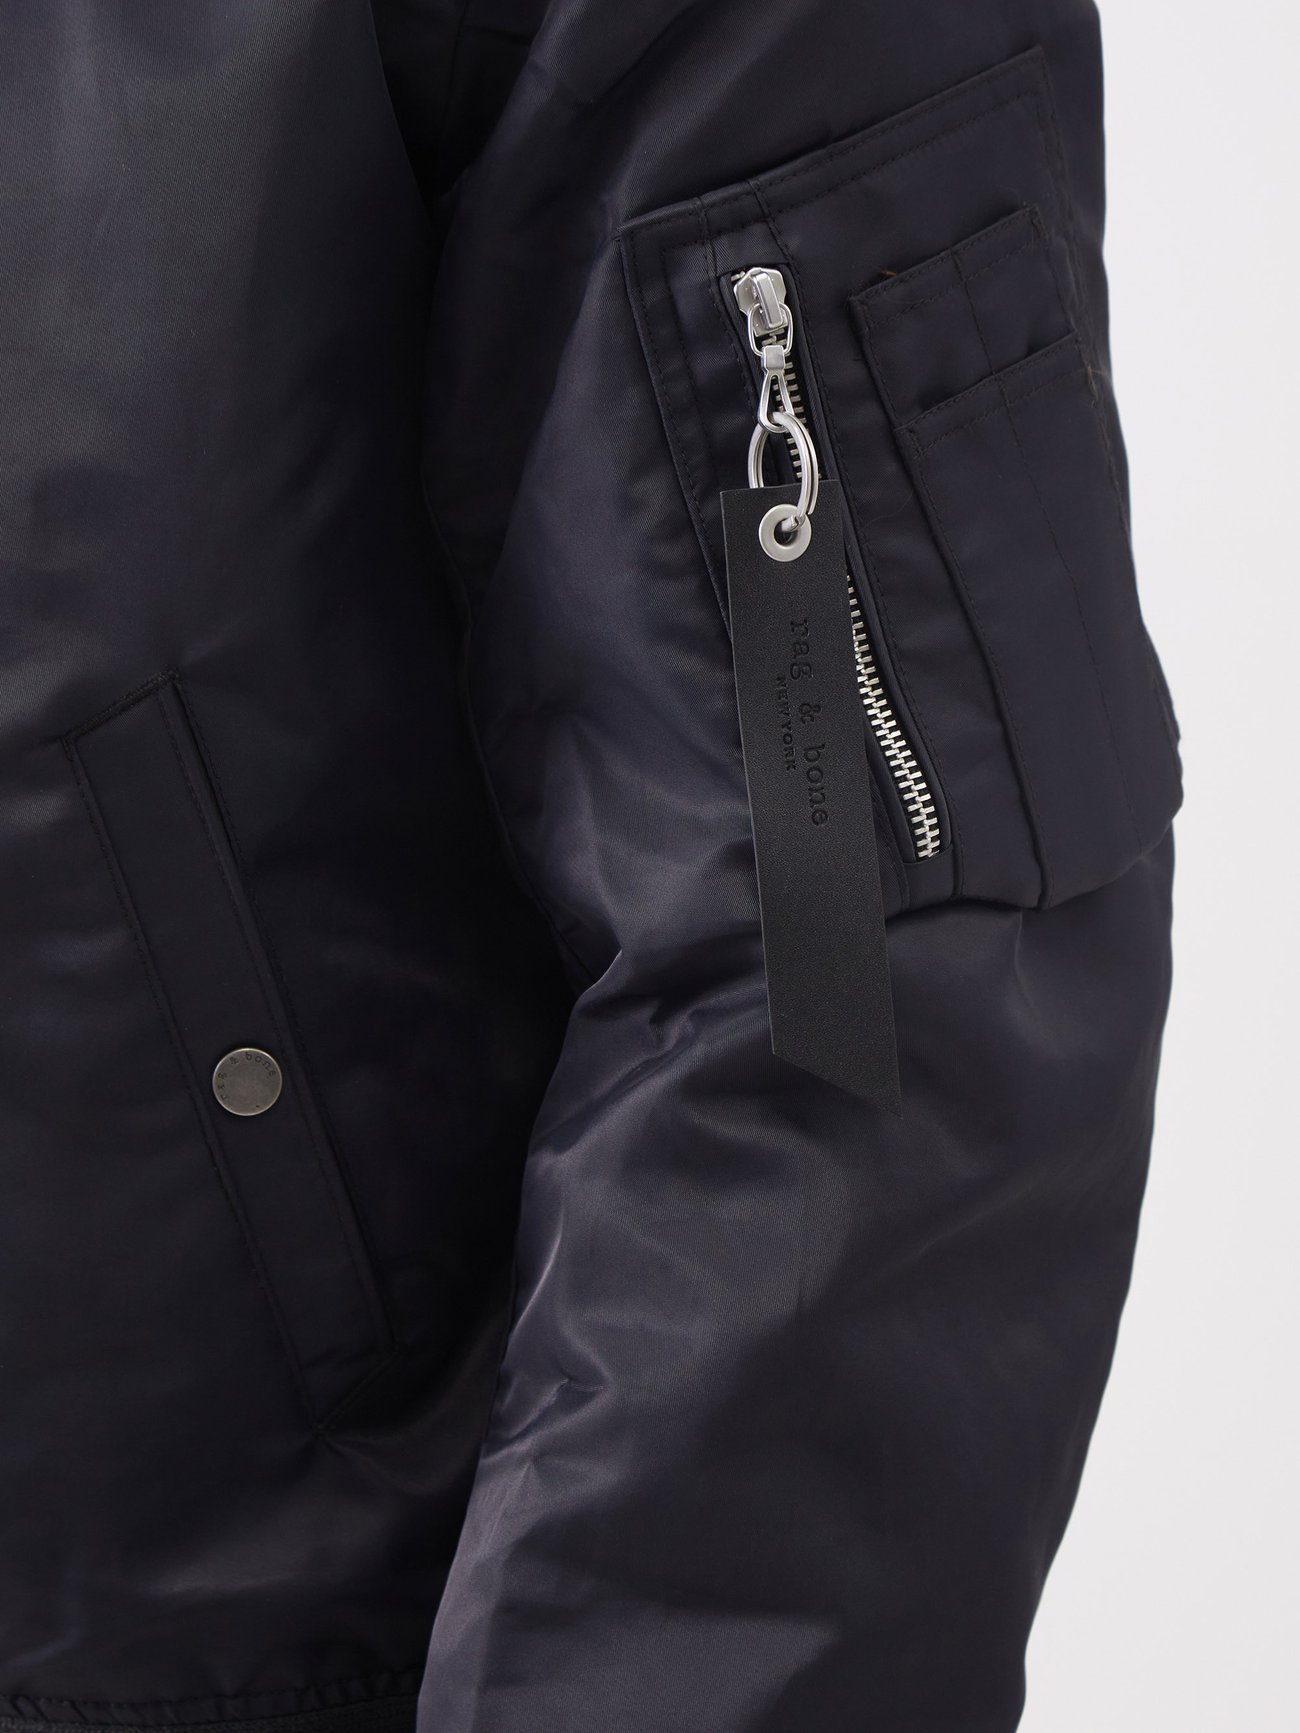 Black Manston recycled-nylon bomber jacket, Rag & Bone